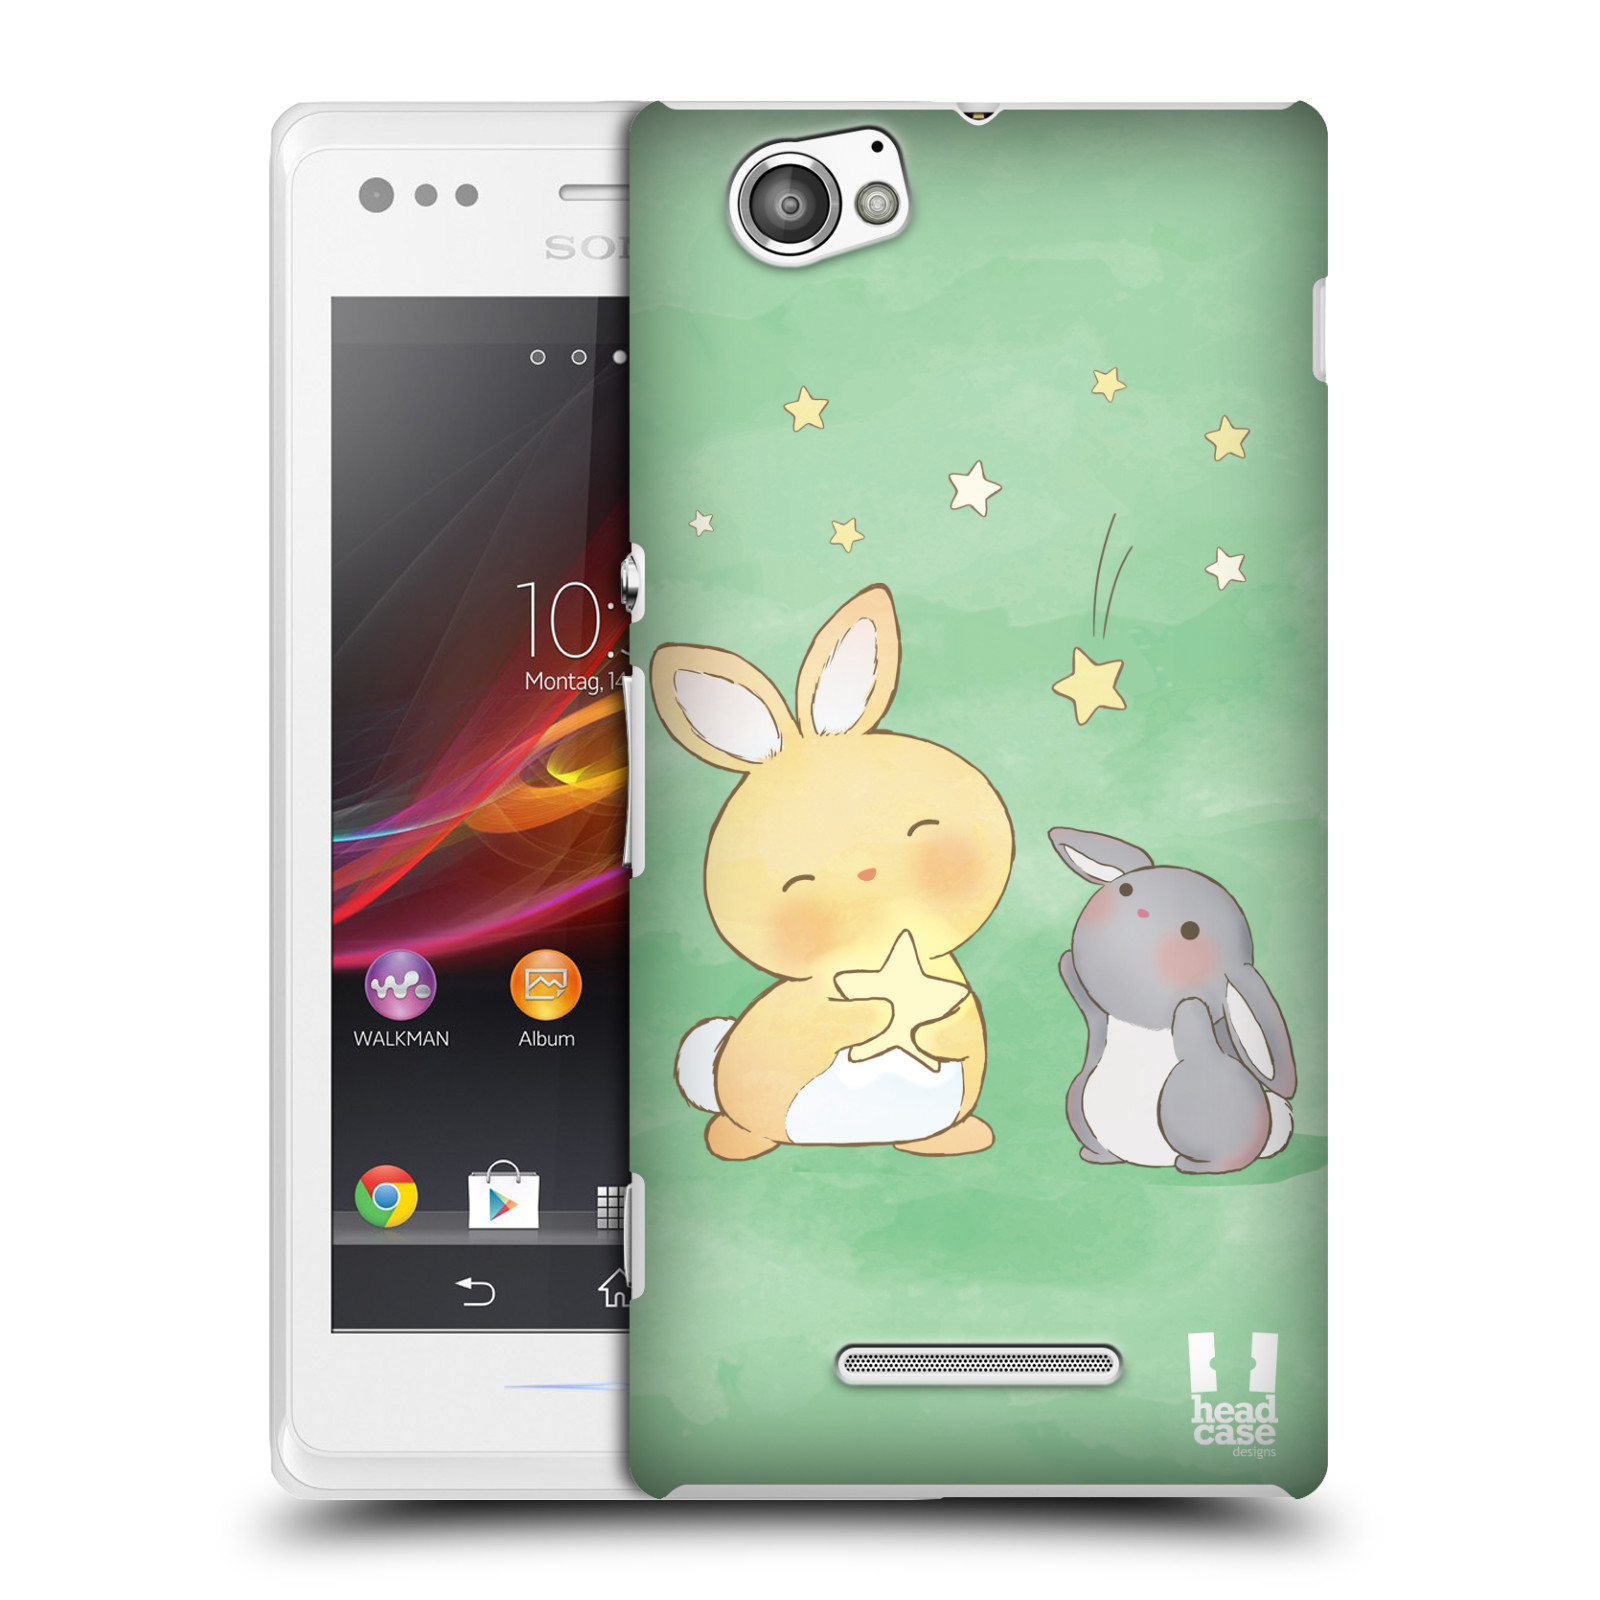 HEAD CASE plastový obal na mobil Sony Xperia M vzor králíček a hvězdy zelená